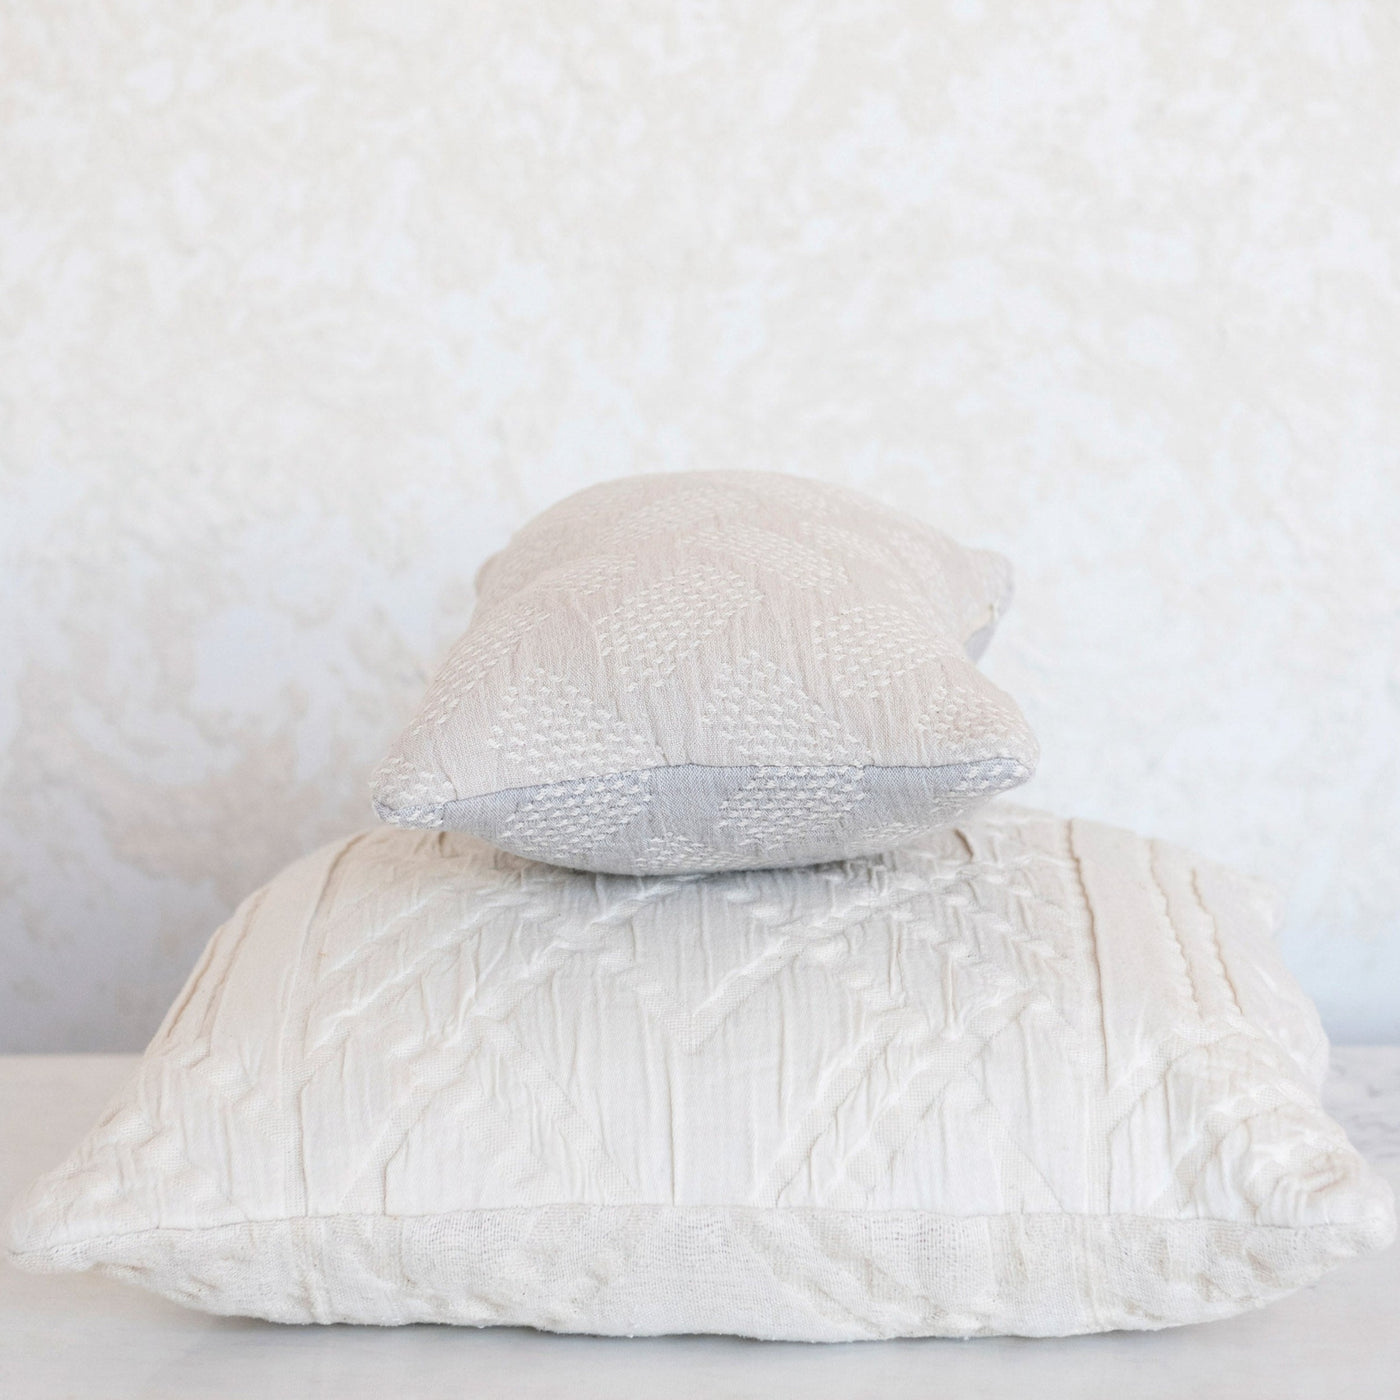 Woven Cotton Jacquard Lumbar Pillow